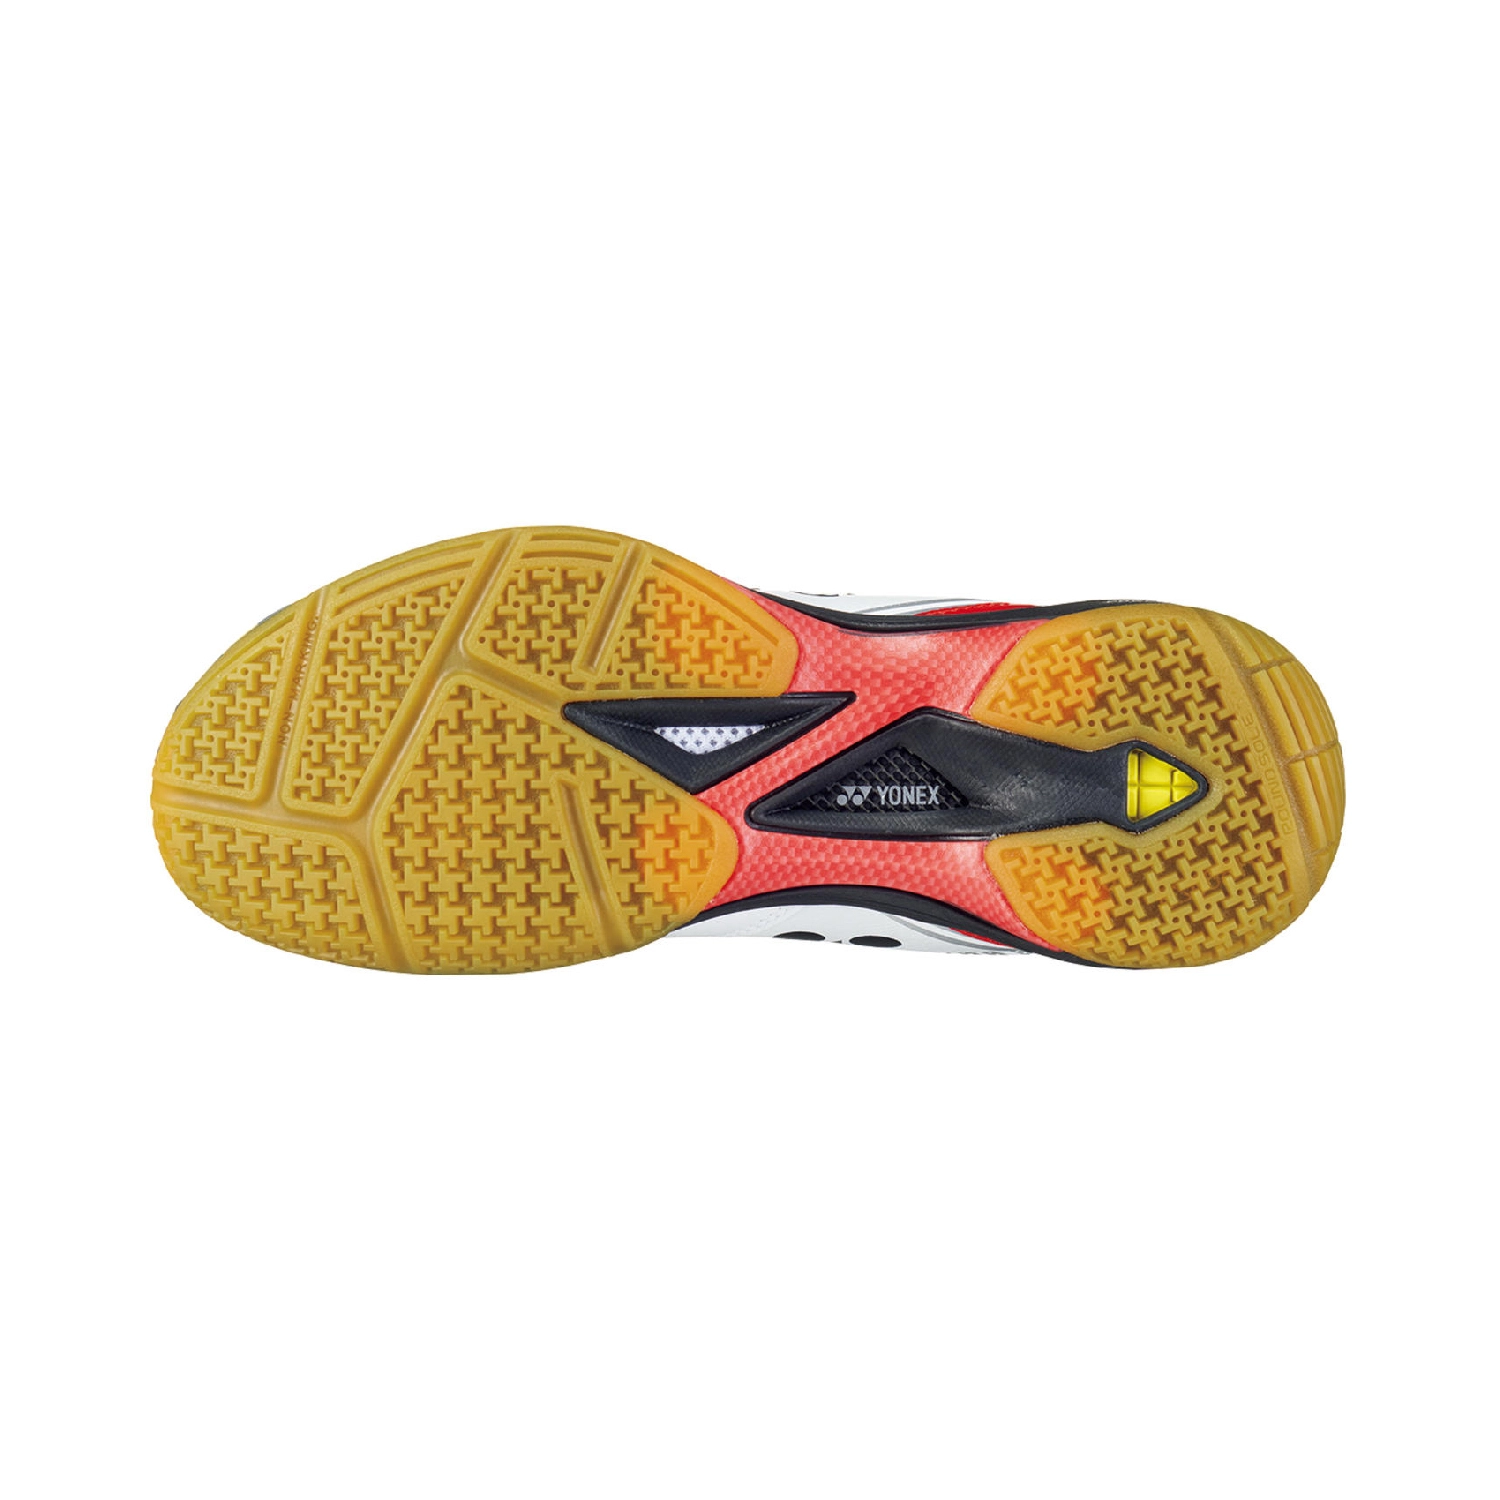 Giày cầu lông Yonex nội địa 65Z3 - Trắng Đỏ JP